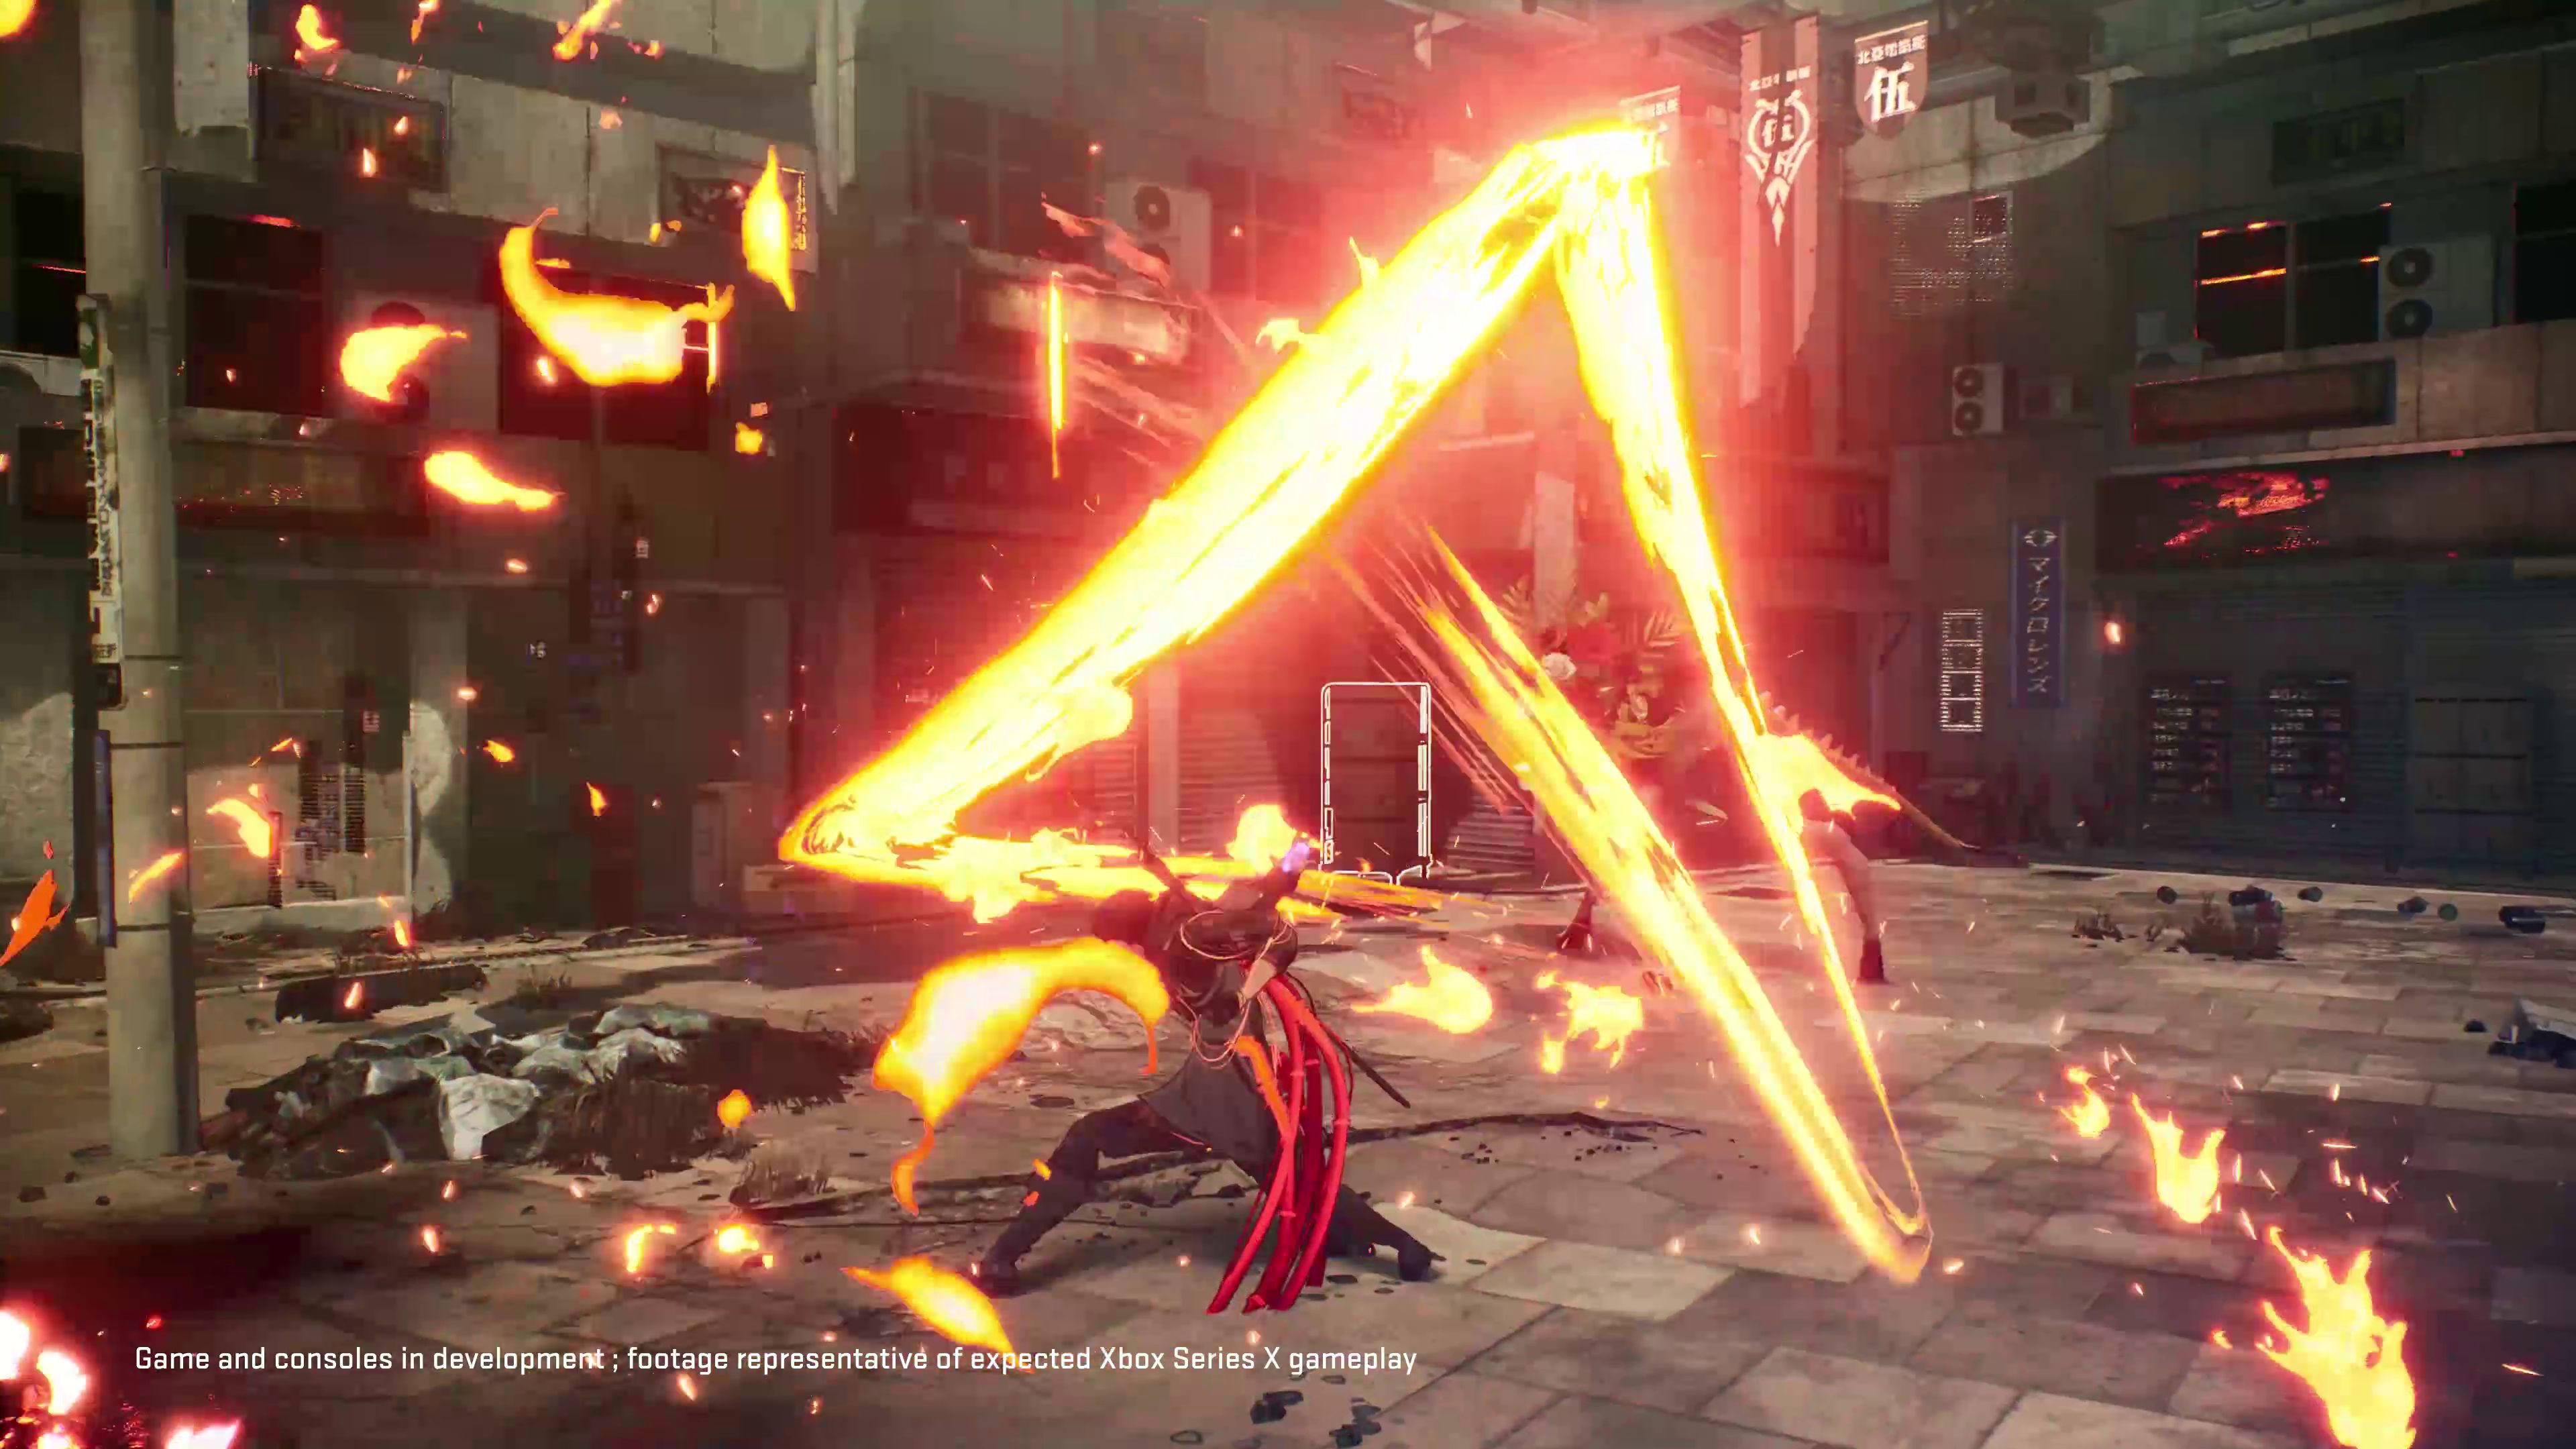 Scarlet Nexus debuts new gameplay video. - Finger Guns